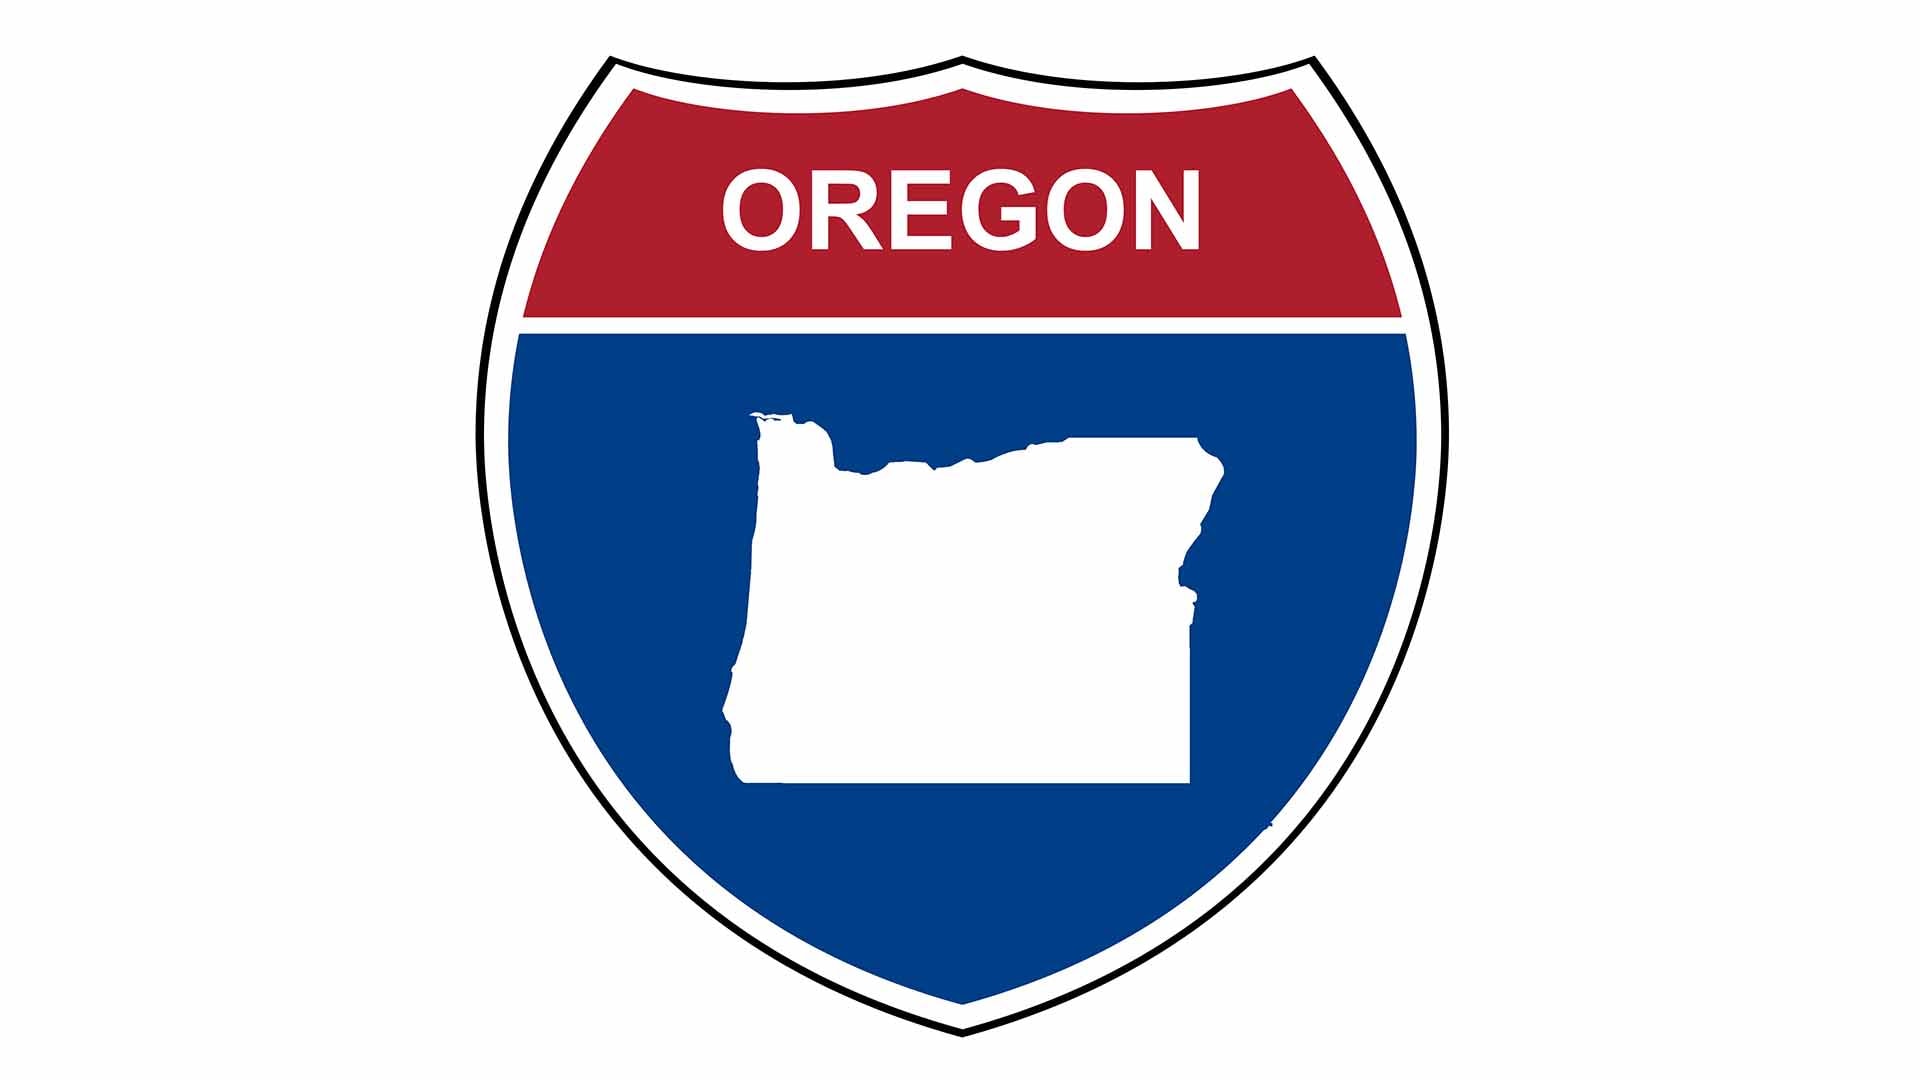 Oregon interstate sign